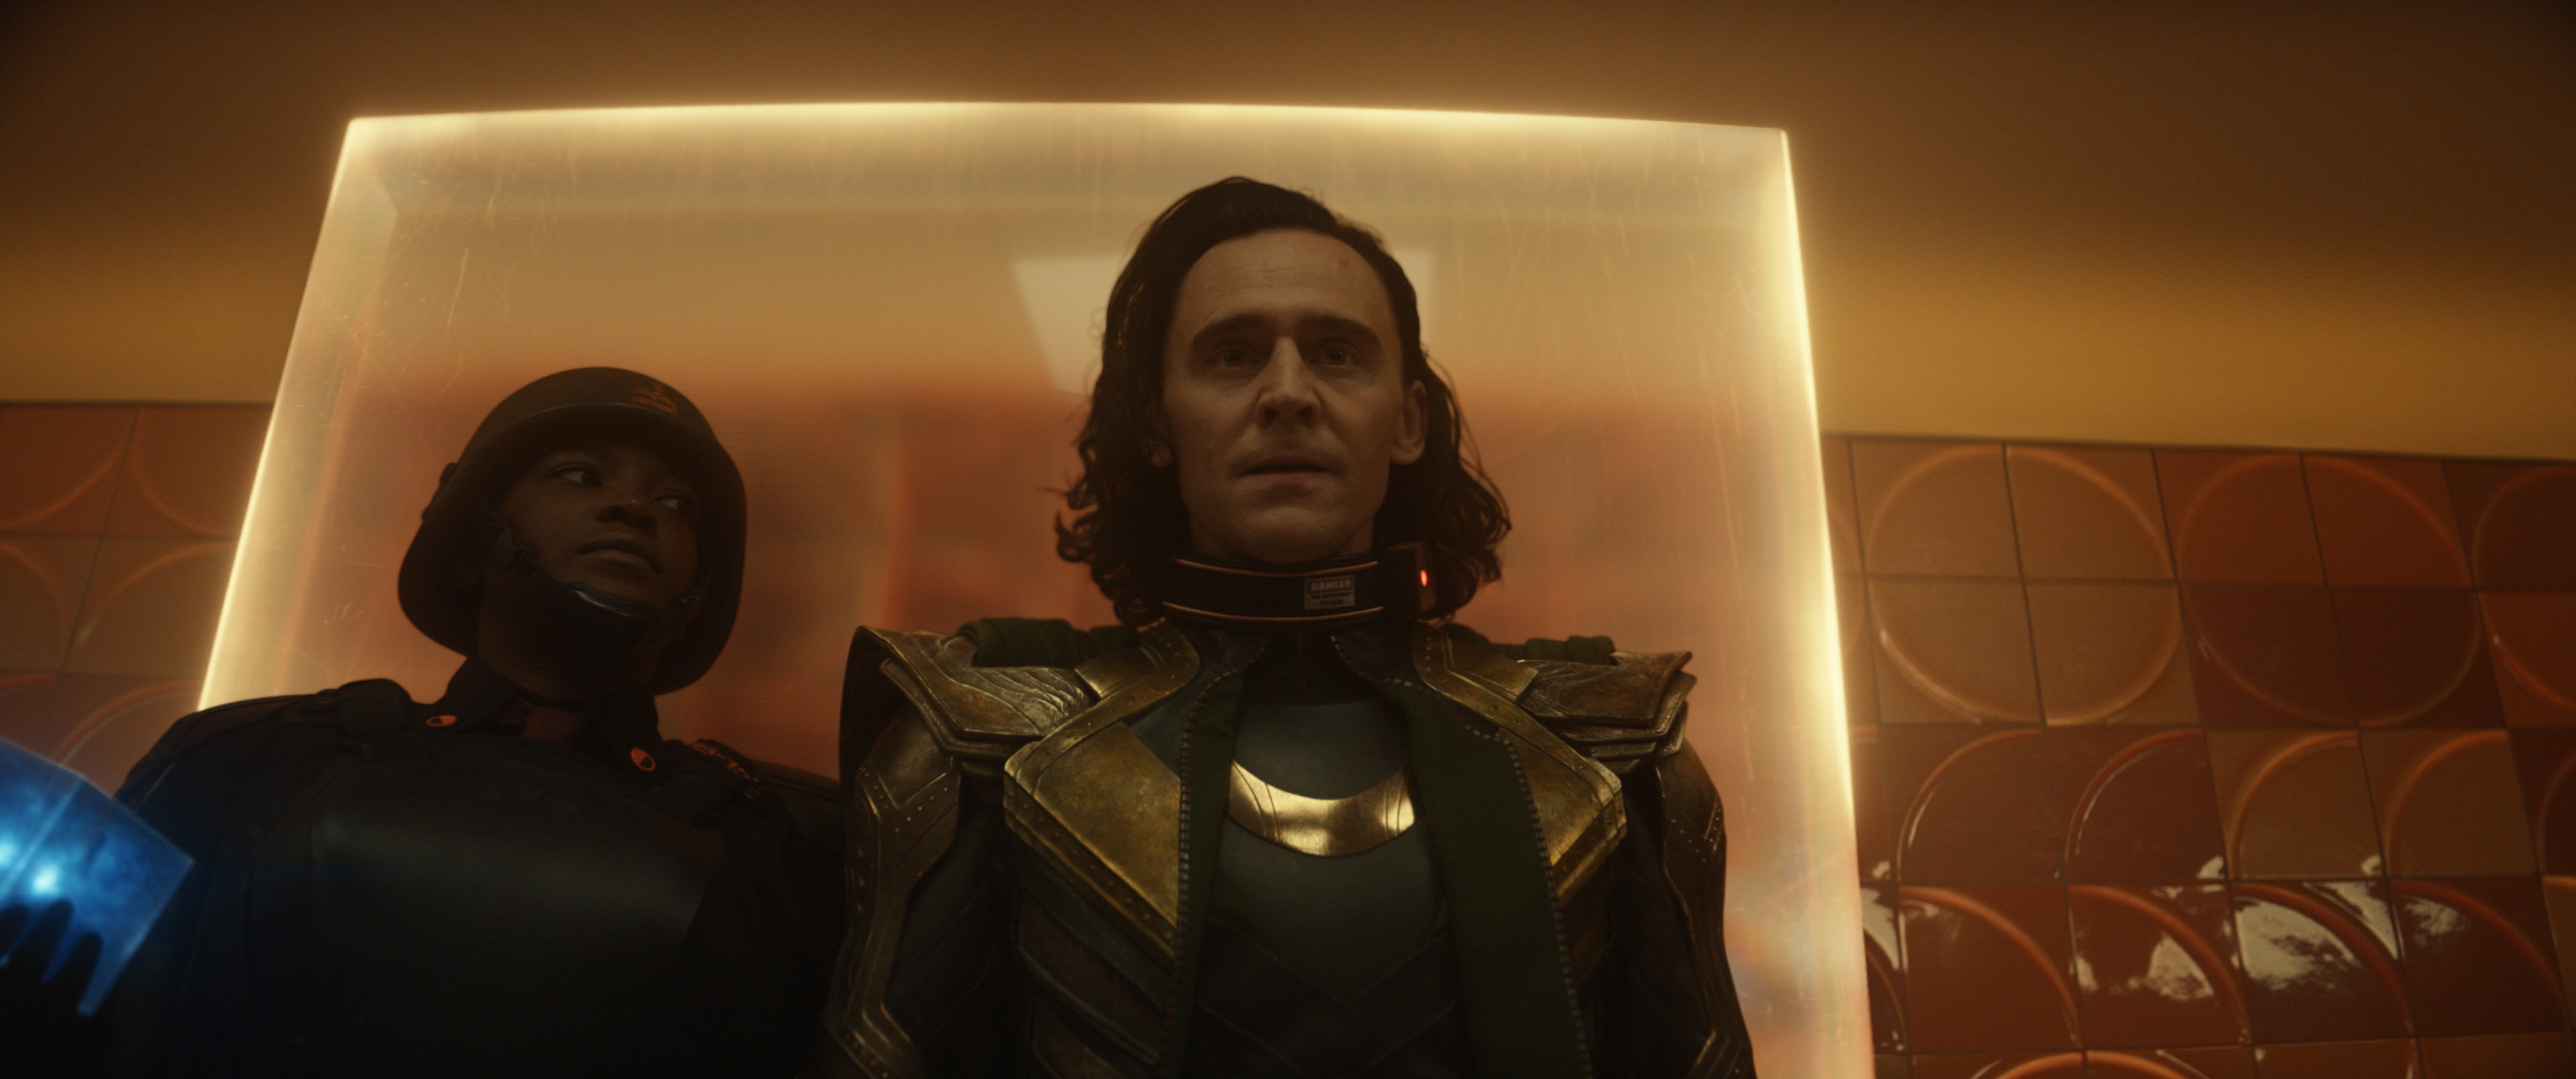 Lokin ohjaaja haluaa sinun ajattelevan joulua katsoessasi esitystä